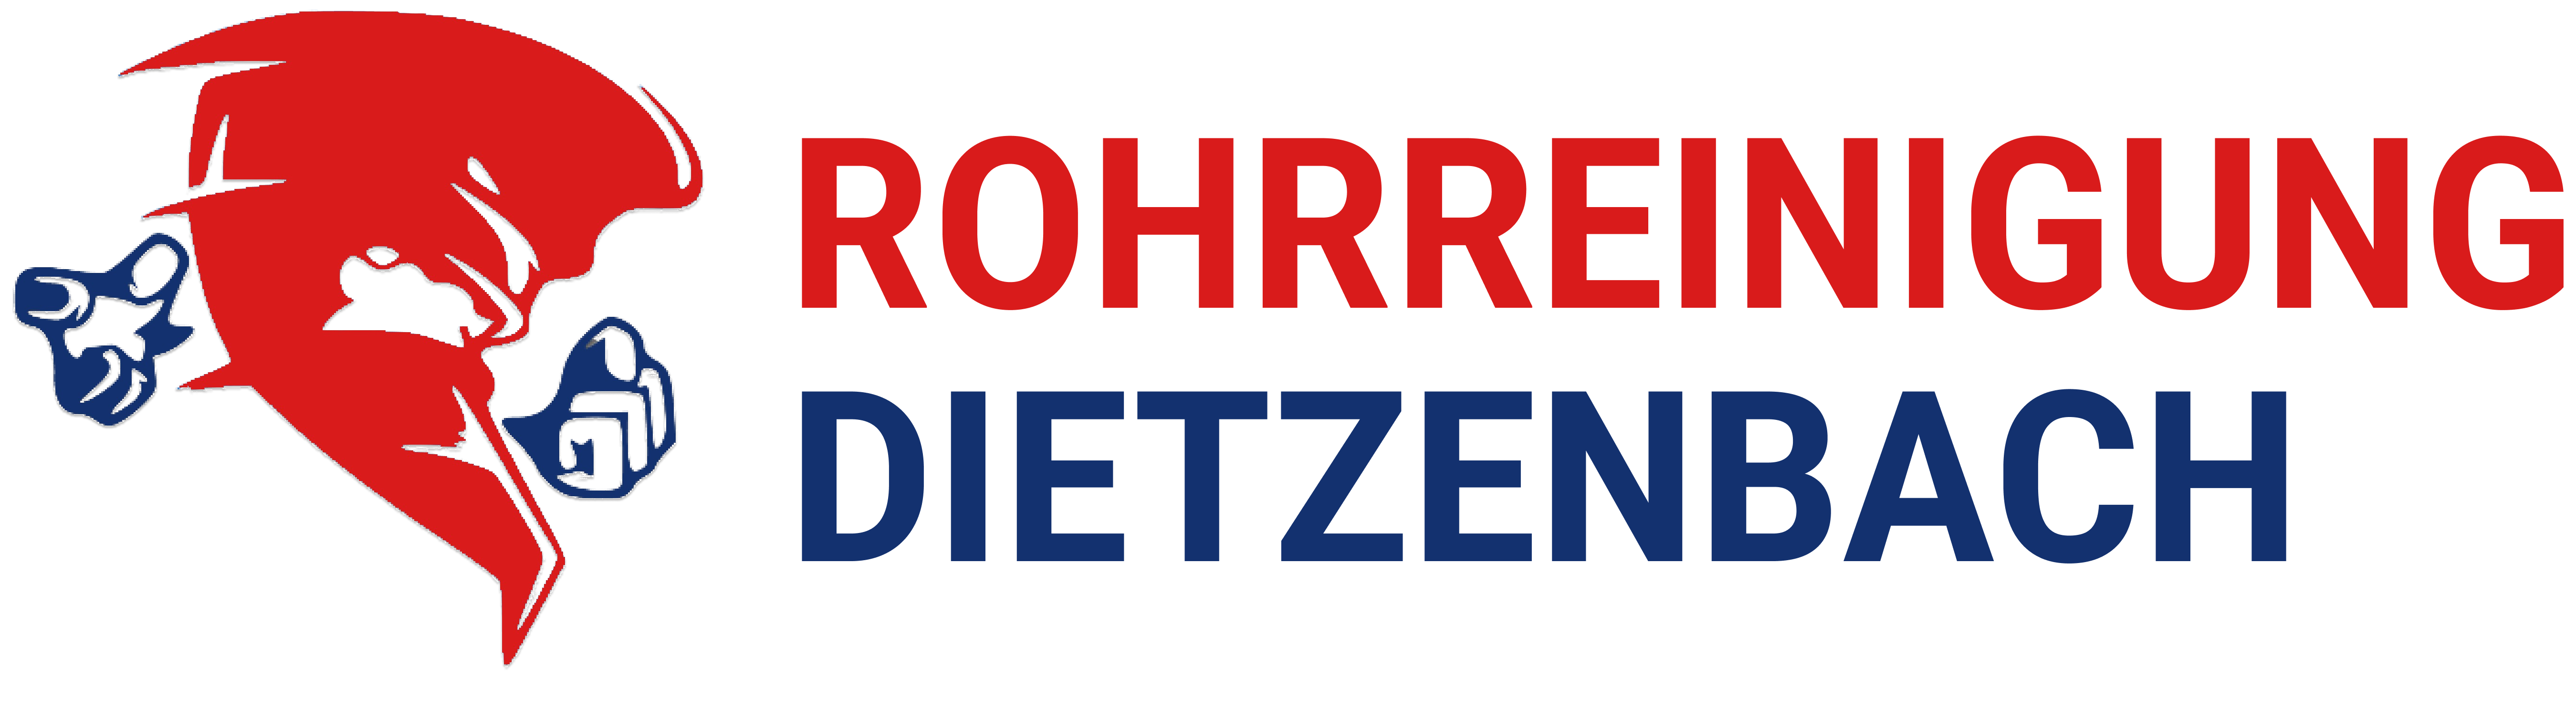 Rohrreinigung für Dietzenbach Logo